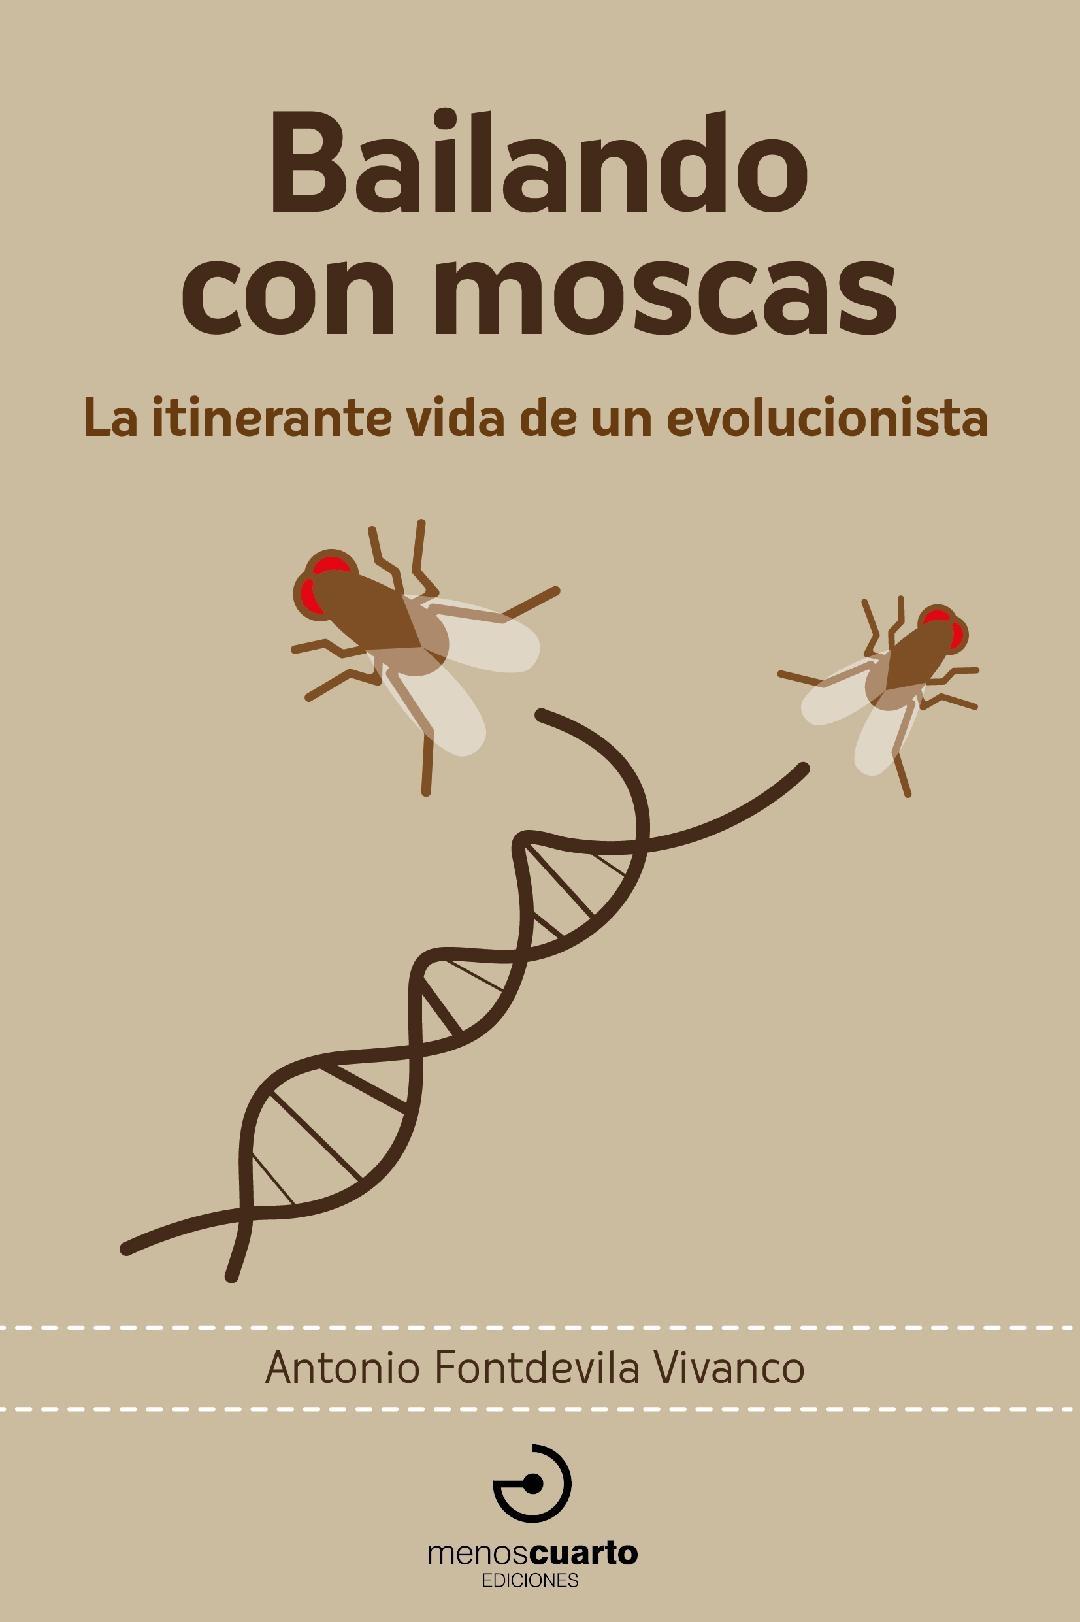 Bailando con moscas "La itinerante vida de un evolucionista"